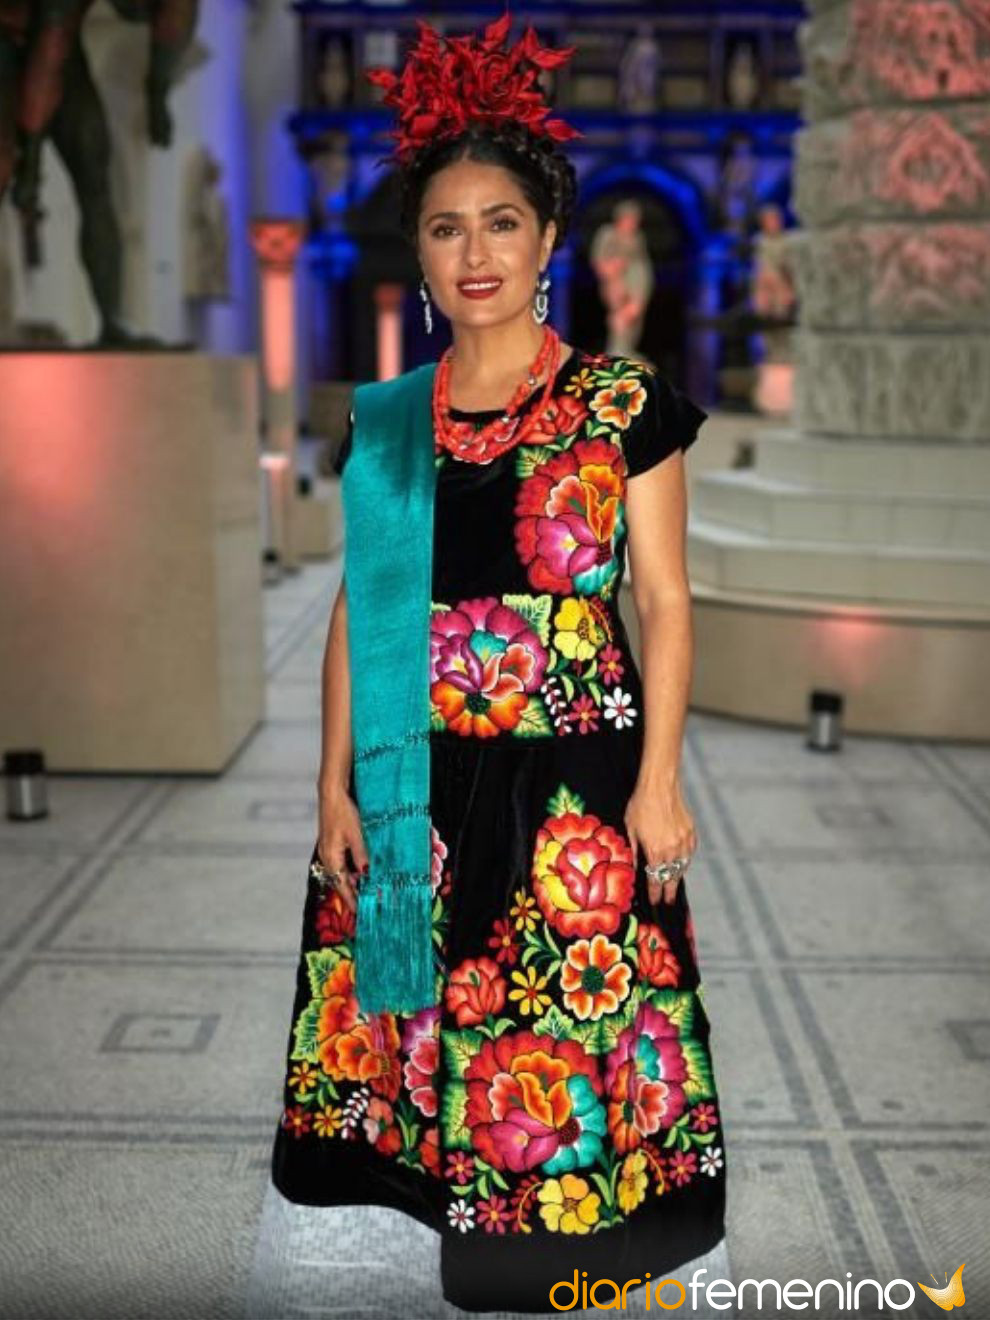 Cómo vestirse para ir a una fiesta mexicana: looks típicos a todo color